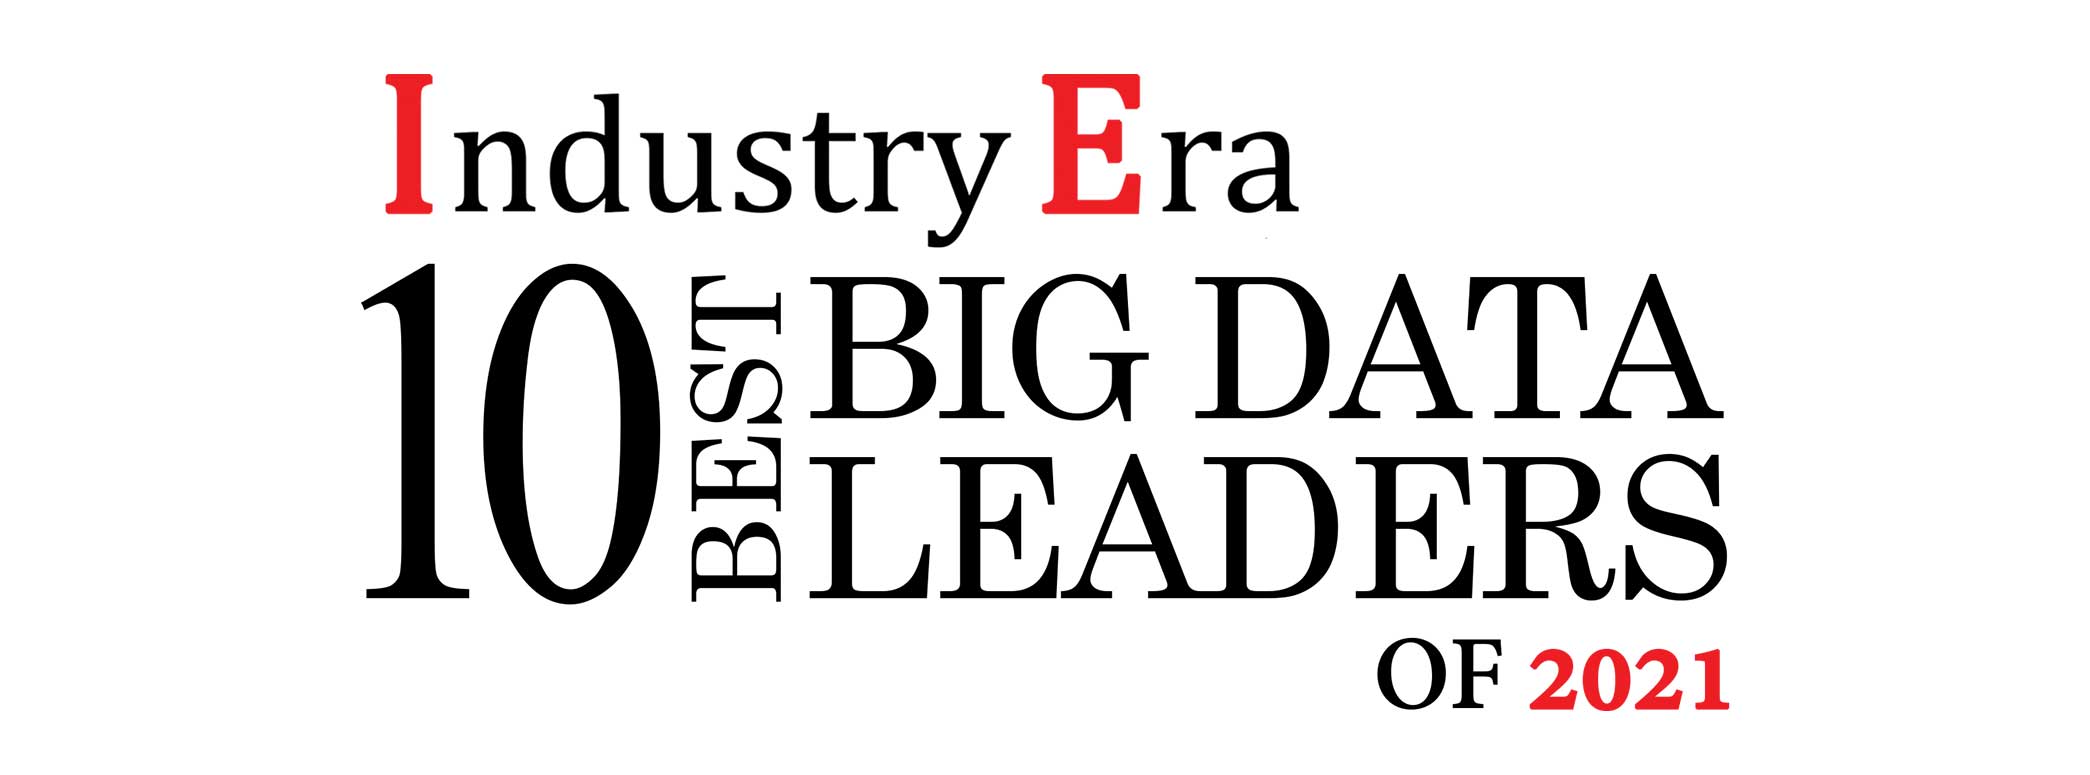 10 Best Bigdata Leaders of 2021 Logo